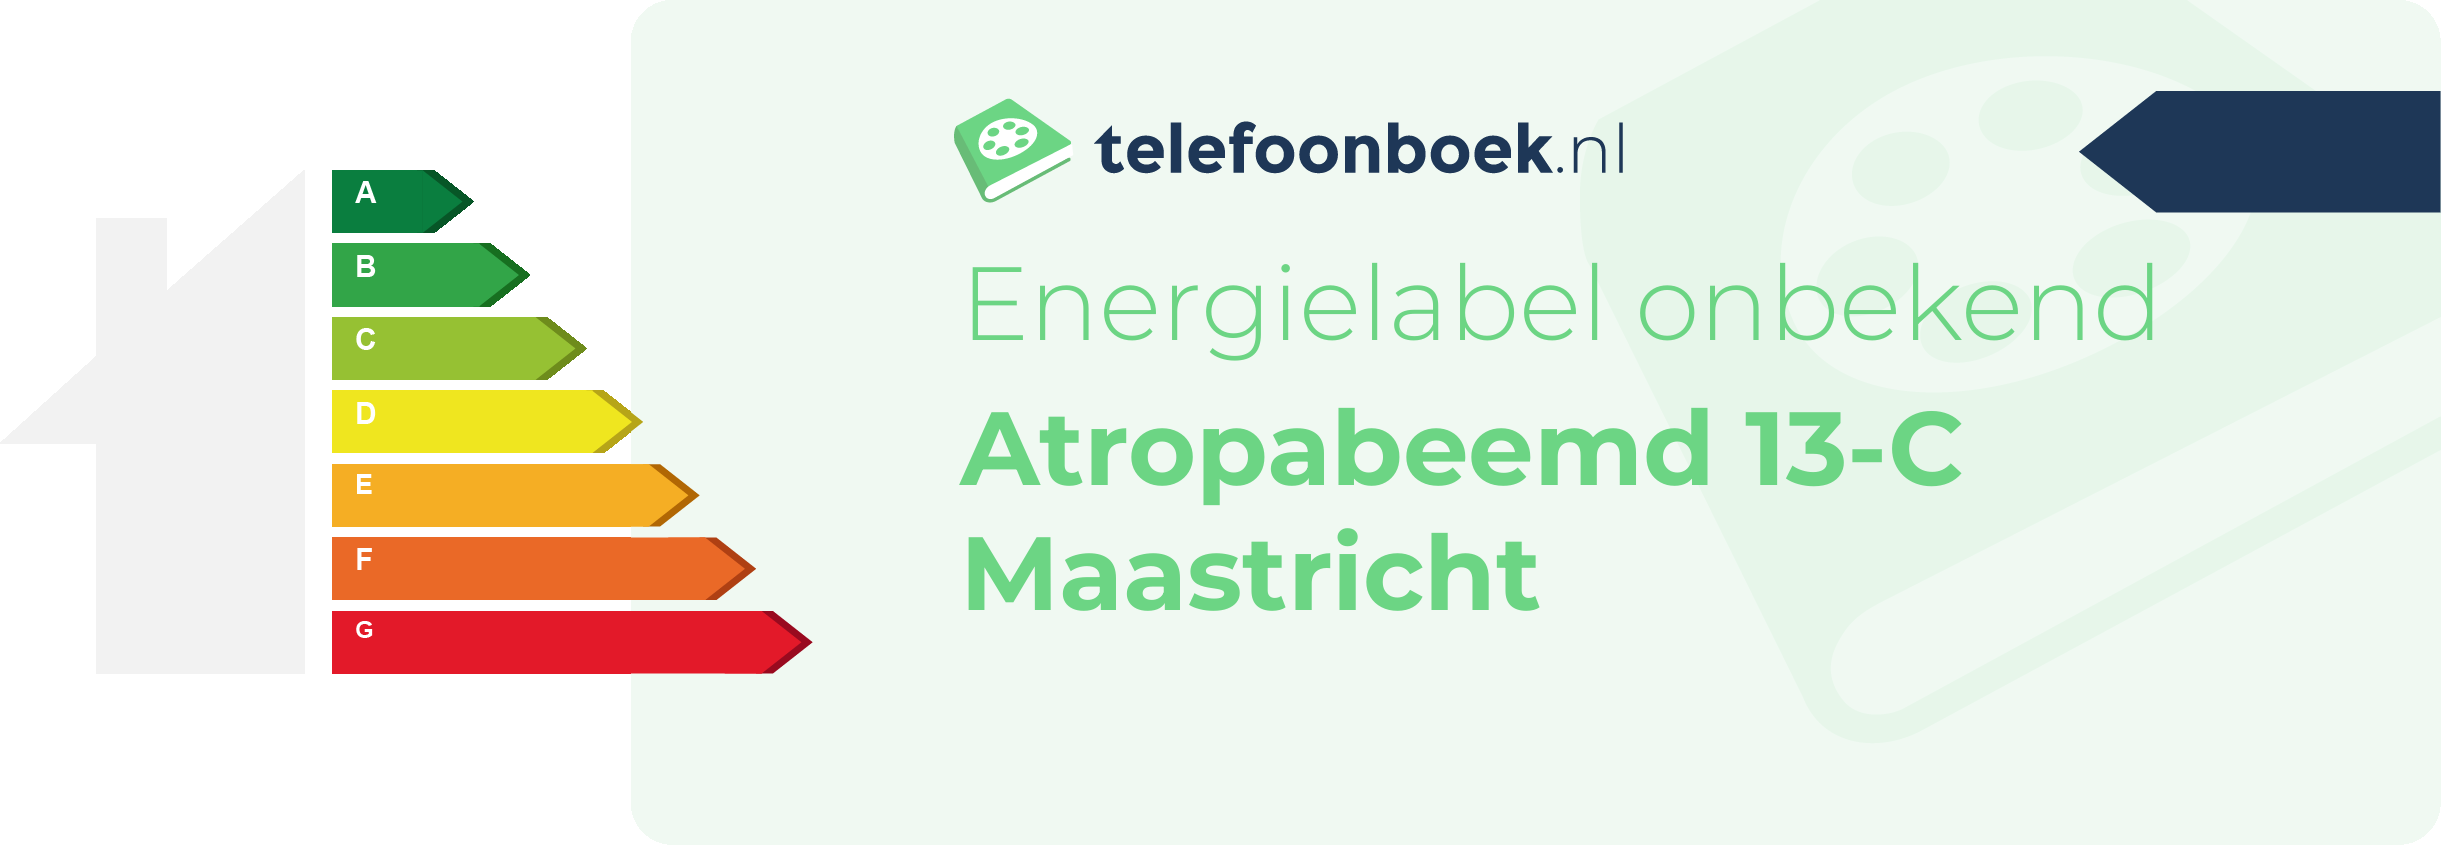 Energielabel Atropabeemd 13-C Maastricht